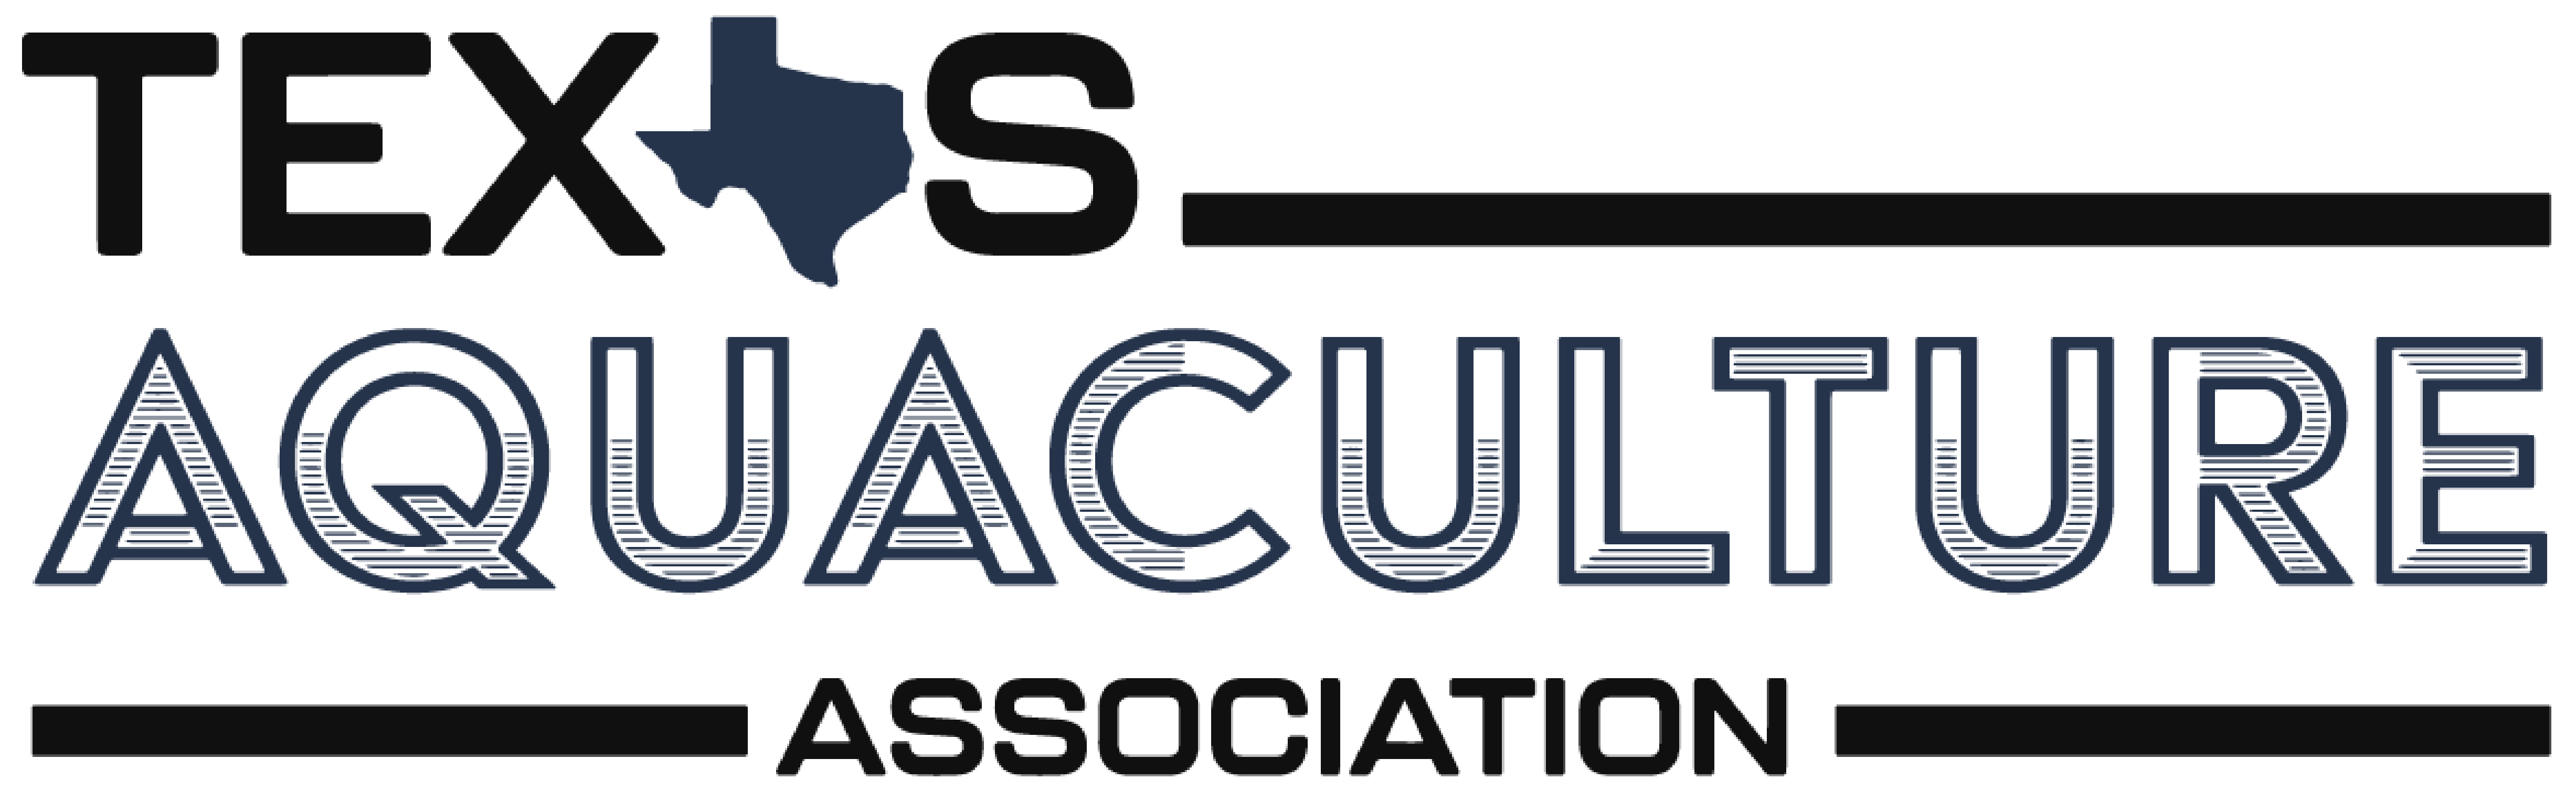 Texas Aquaculture Association